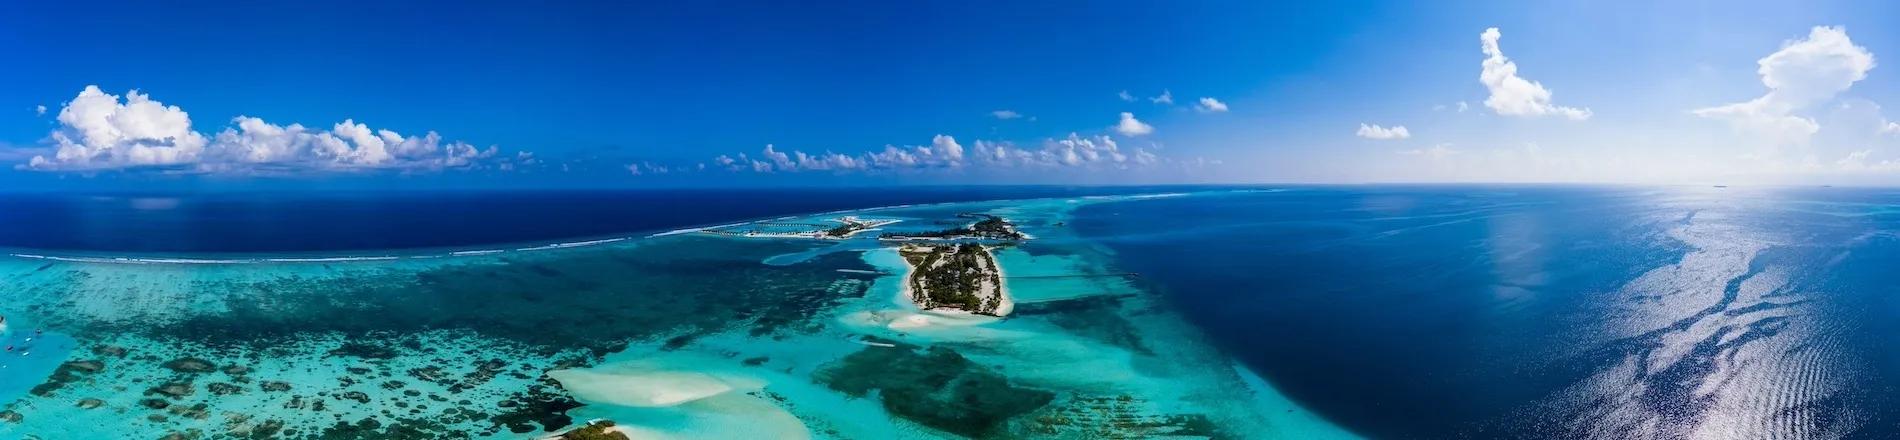 Potápění mezi korálovými útesy Malediv